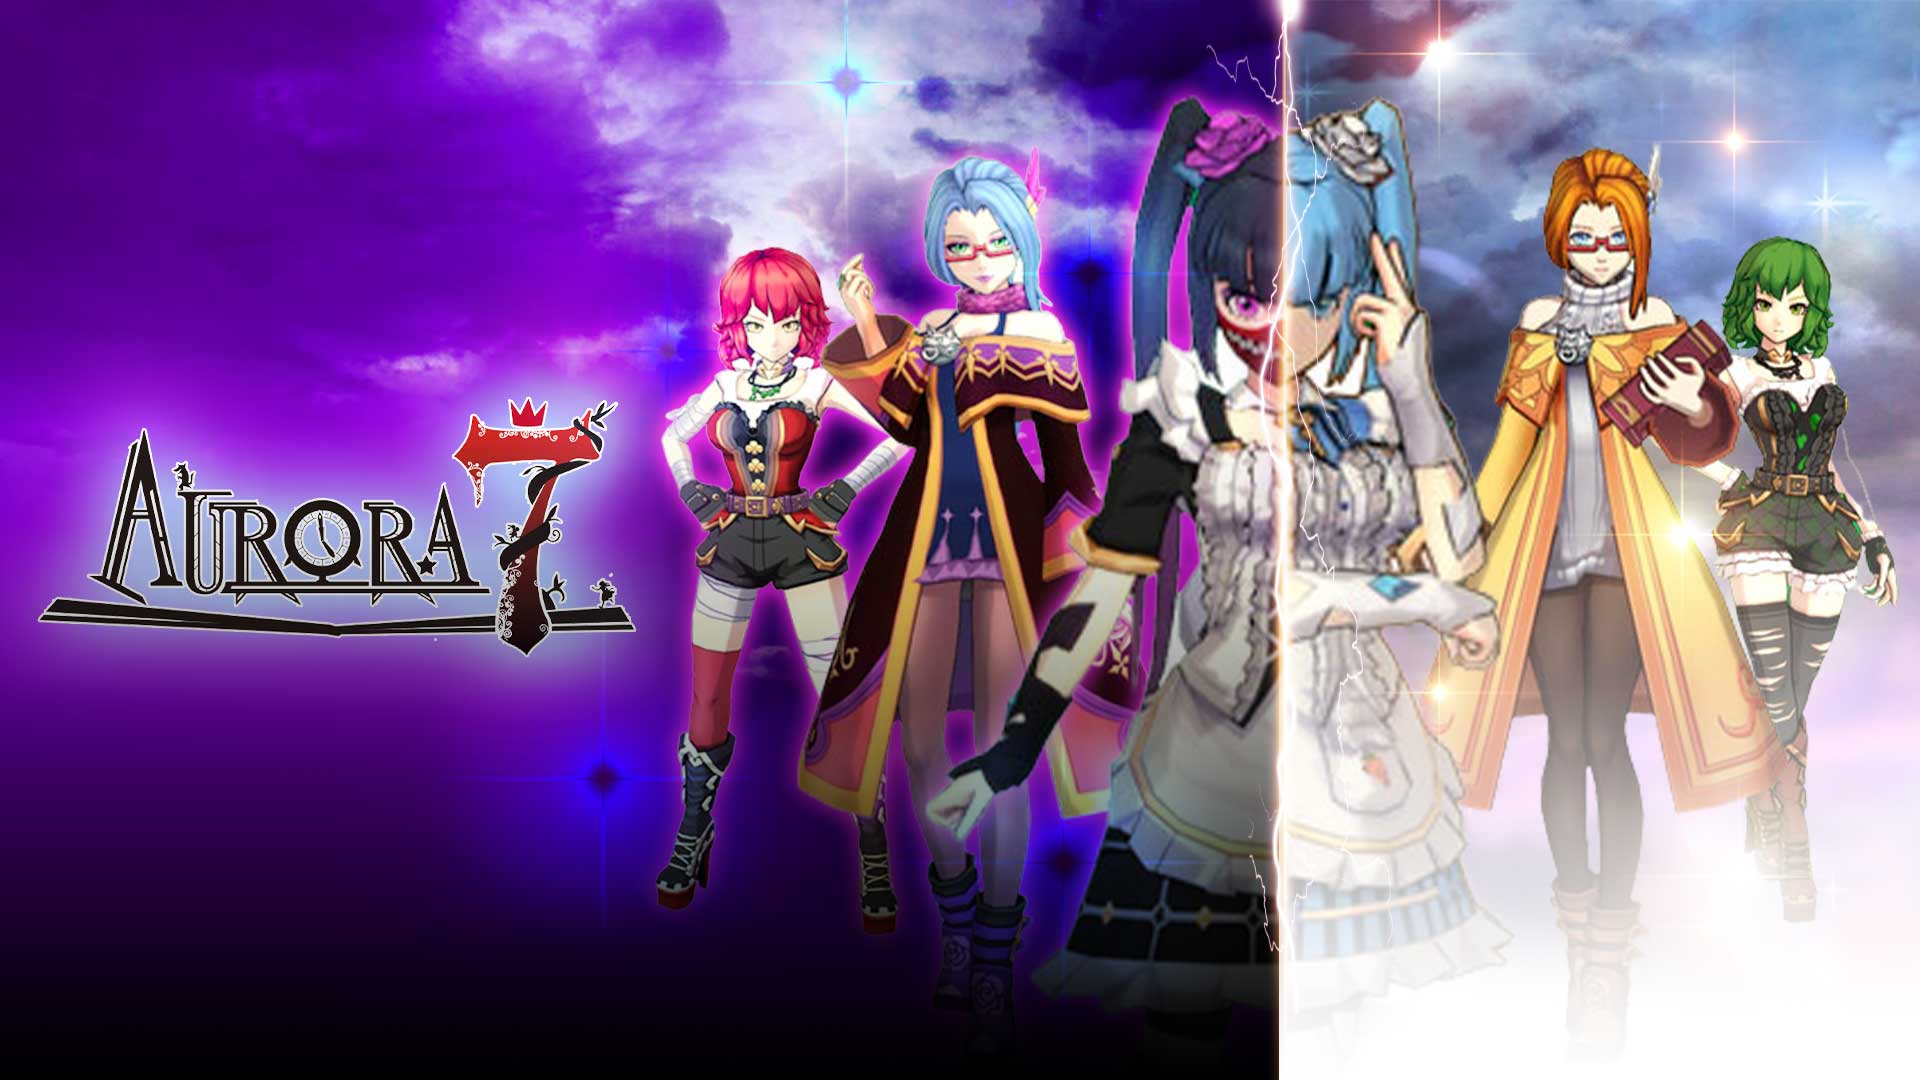 AURORA 7 Indonesia, Game Mobile Petualangan Seru dengan Grafis Anime 3D Menawan!